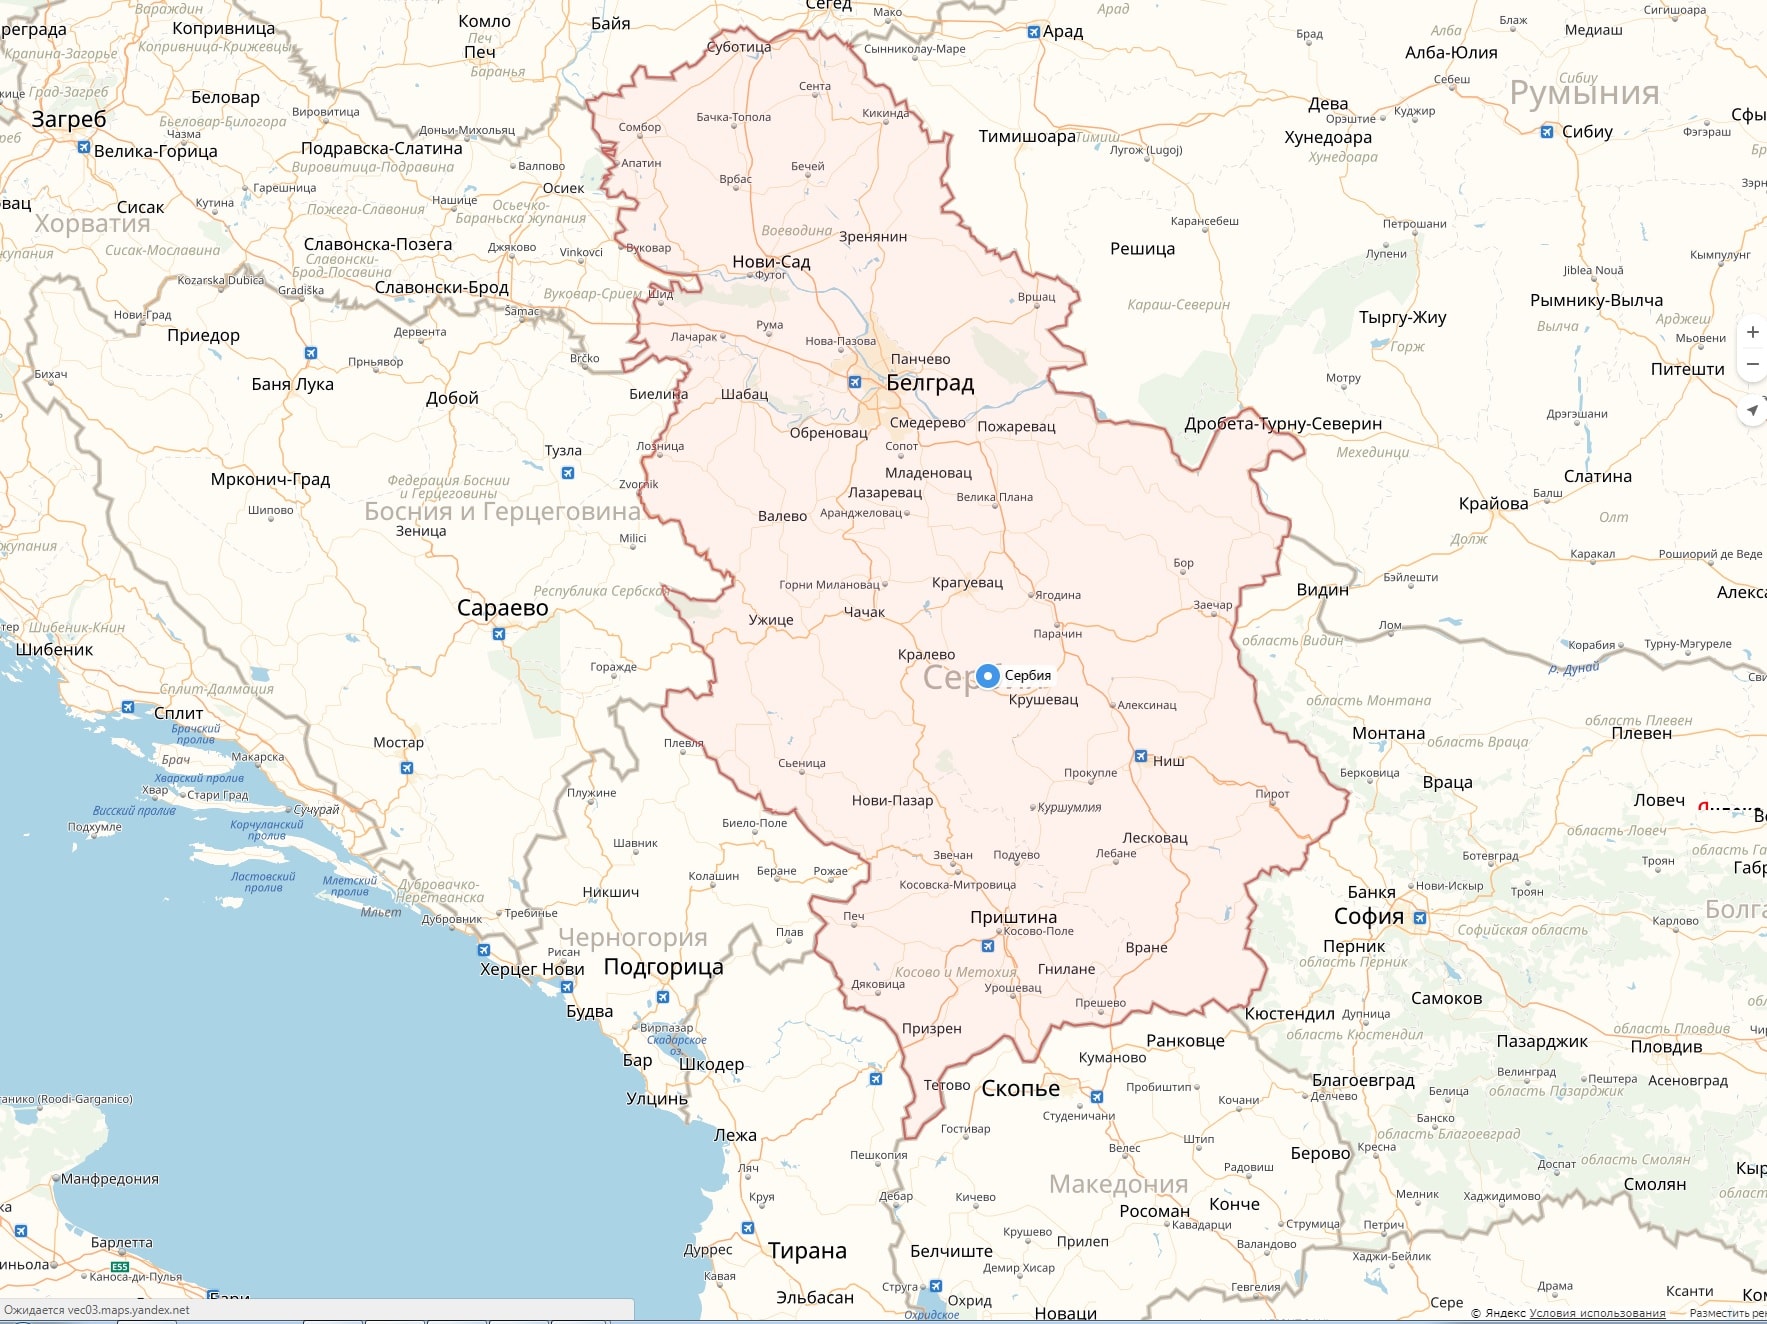 Карта сербии подробная на русском. Сербия на карте Европы. Сербия политическая карта. Карта Сербии 1910.